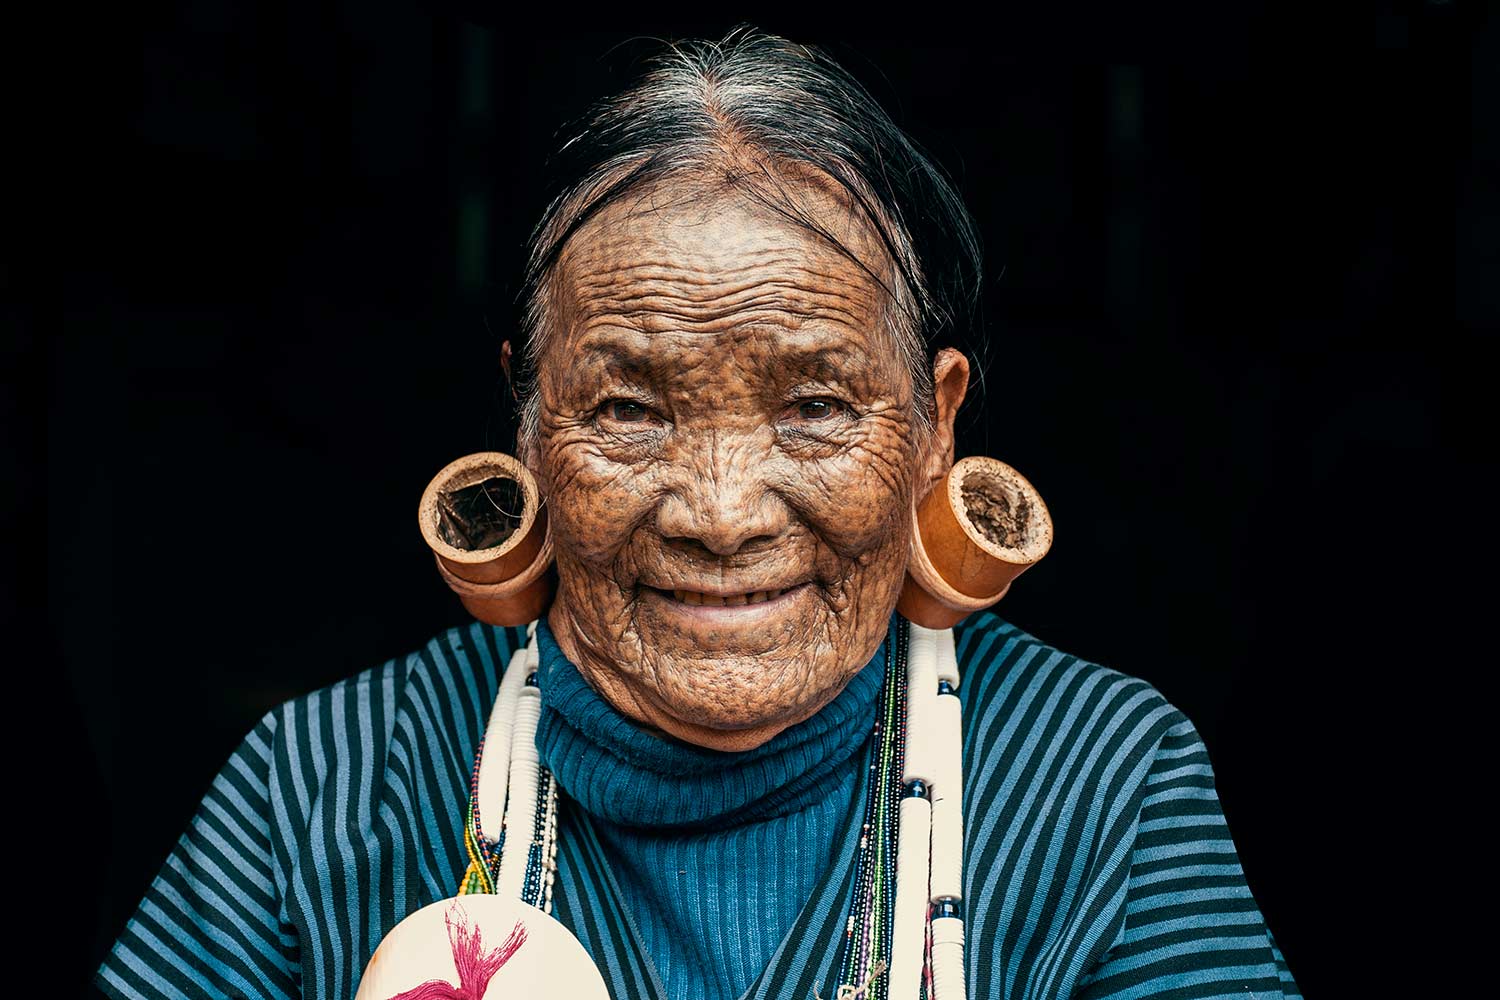 Die traditionellen Gesichtstattoos von Hung Shen spiegeln einen wichtigen Teil der Geschichte der Chin-Frauen wider, die so ihre kulturelle Identität ausdrückten. / Foto: Michael Zomer.